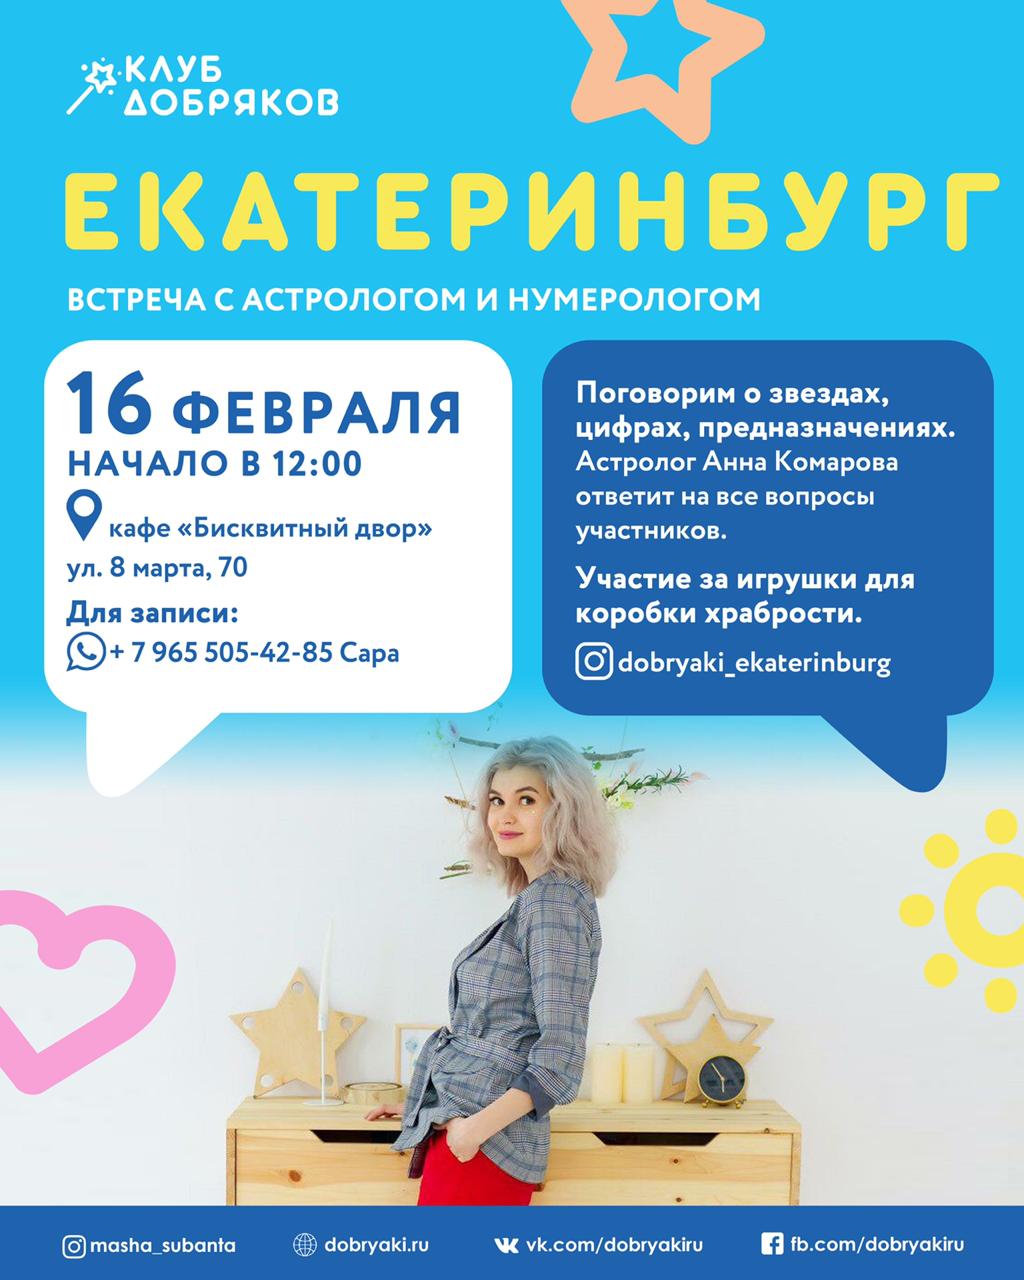 Добряки Екатеринбурга организуют встречу с астрологом